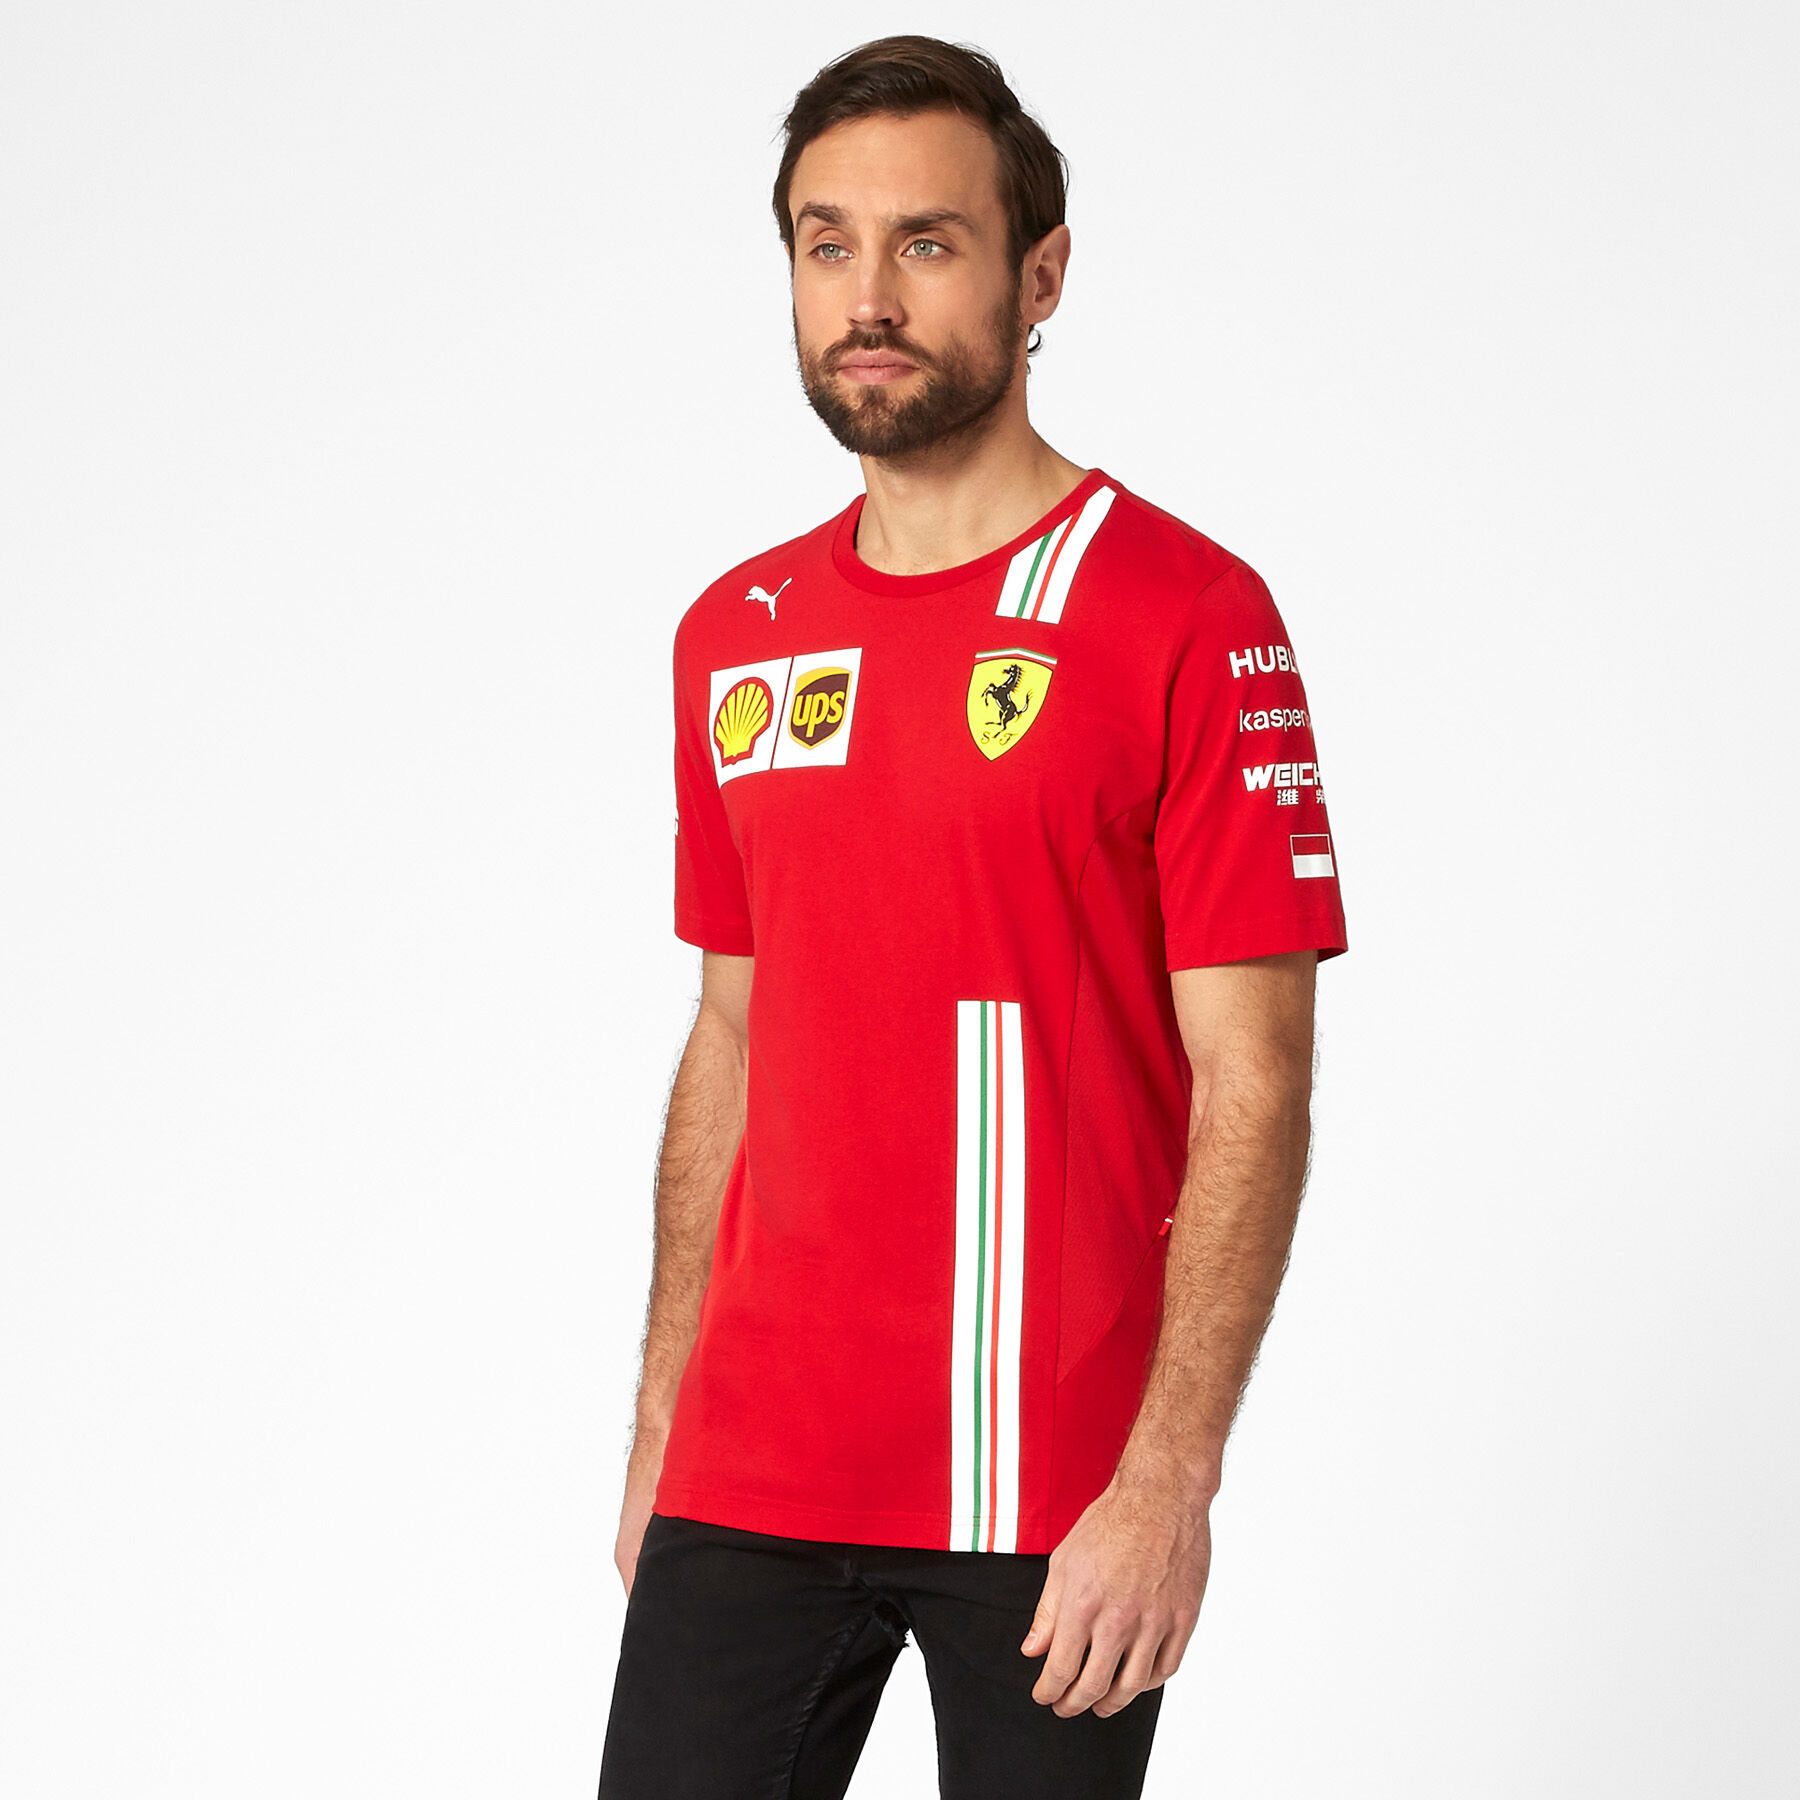 NEW 2020 Scuderia FERRARI F1 Charles LECLERC Team T Shirt Tee MENS Red OFFICIAL